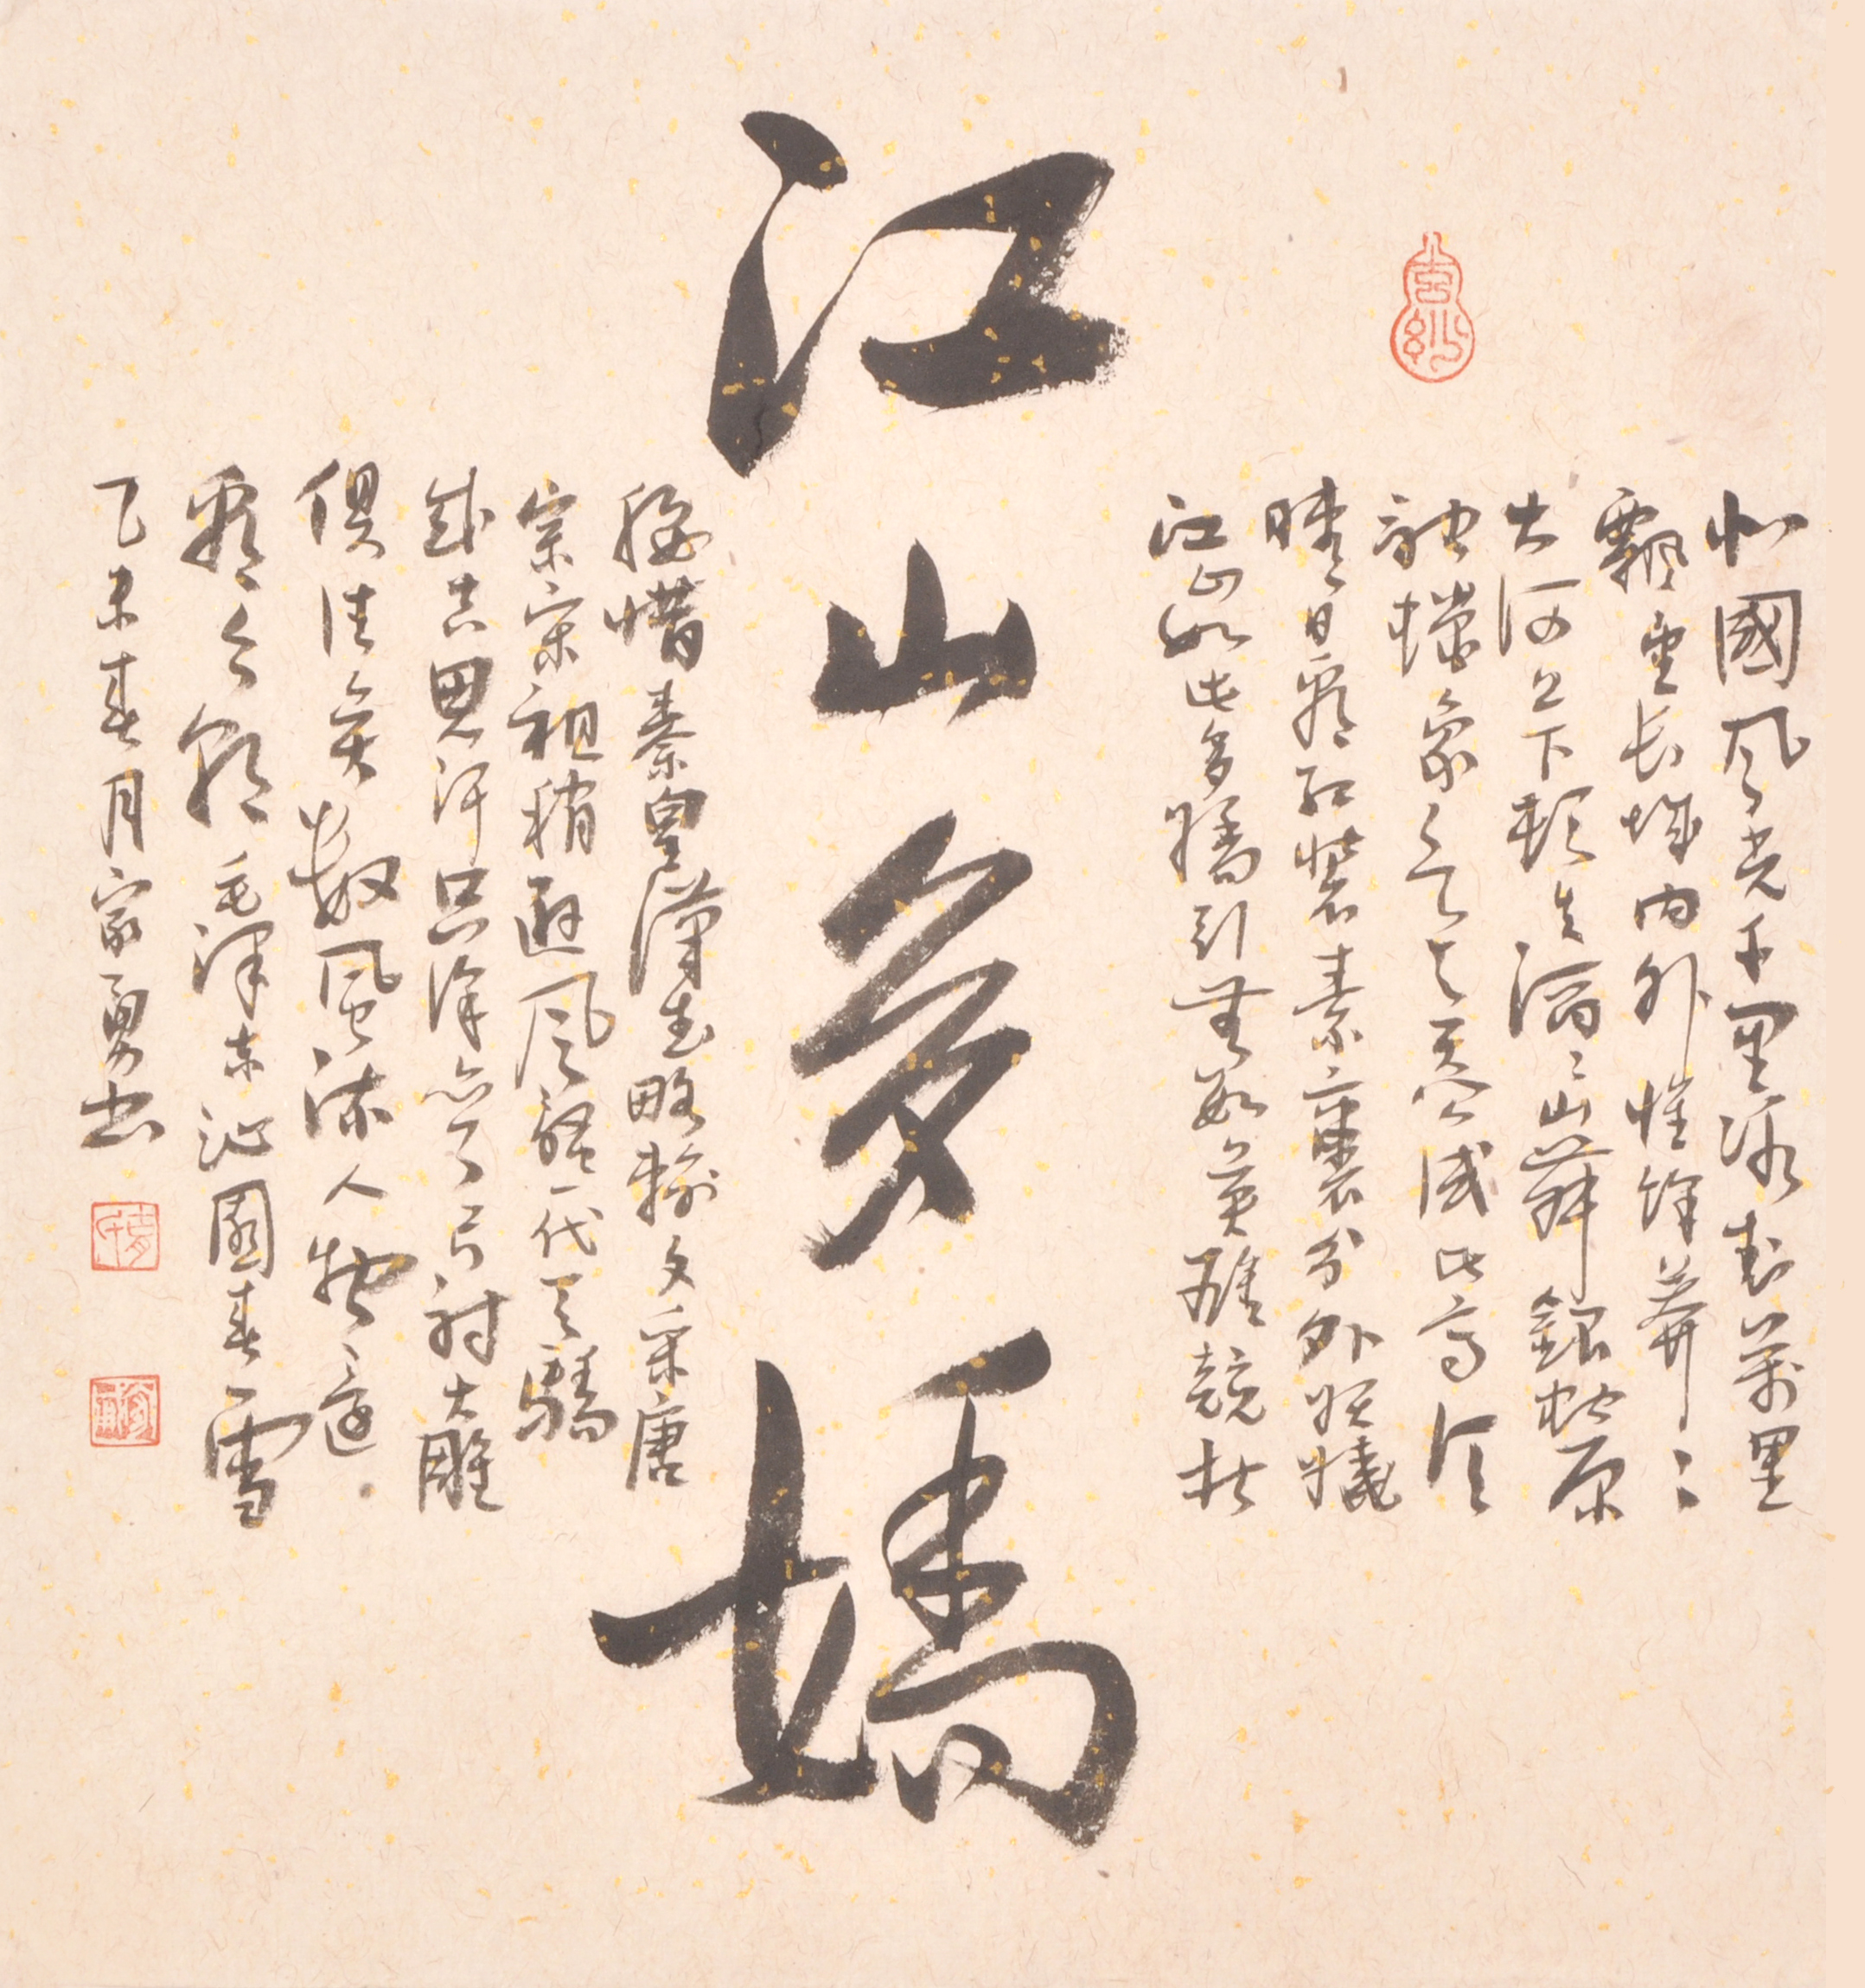   作品名称 江山多娇 作品分类 书法 售价 3,000~~3,500 年代